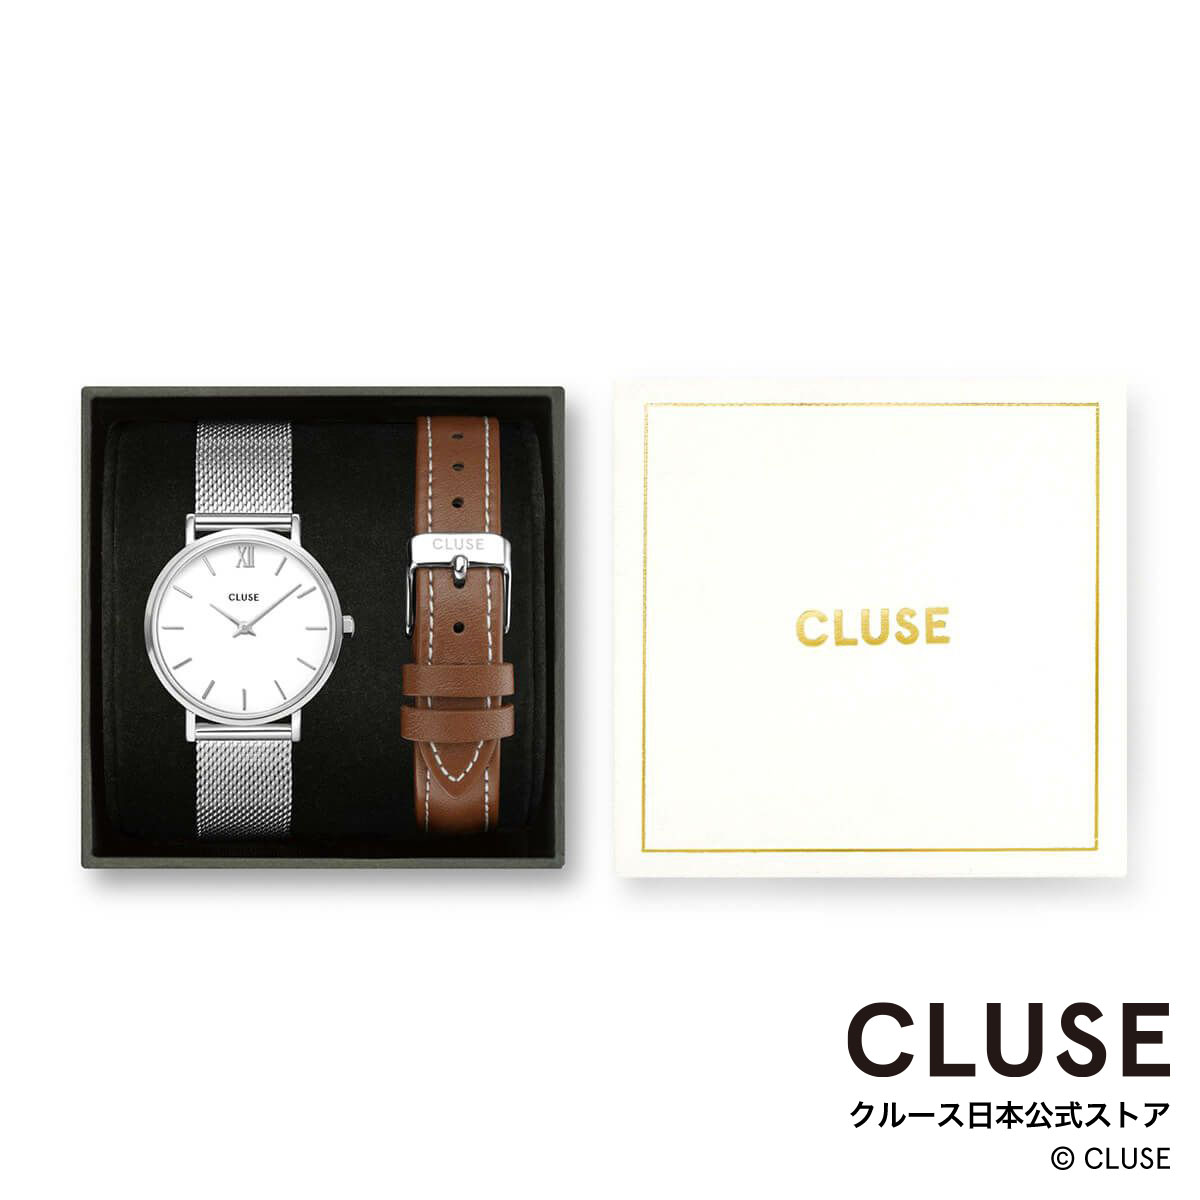 クルース CLUSE 日本公式ストア ミニュイ ホワイト シルバー メッシュ ブラウン レザー ベルト ギフトボックス レディース 女性 腕時計 時計 防水 クォーツ